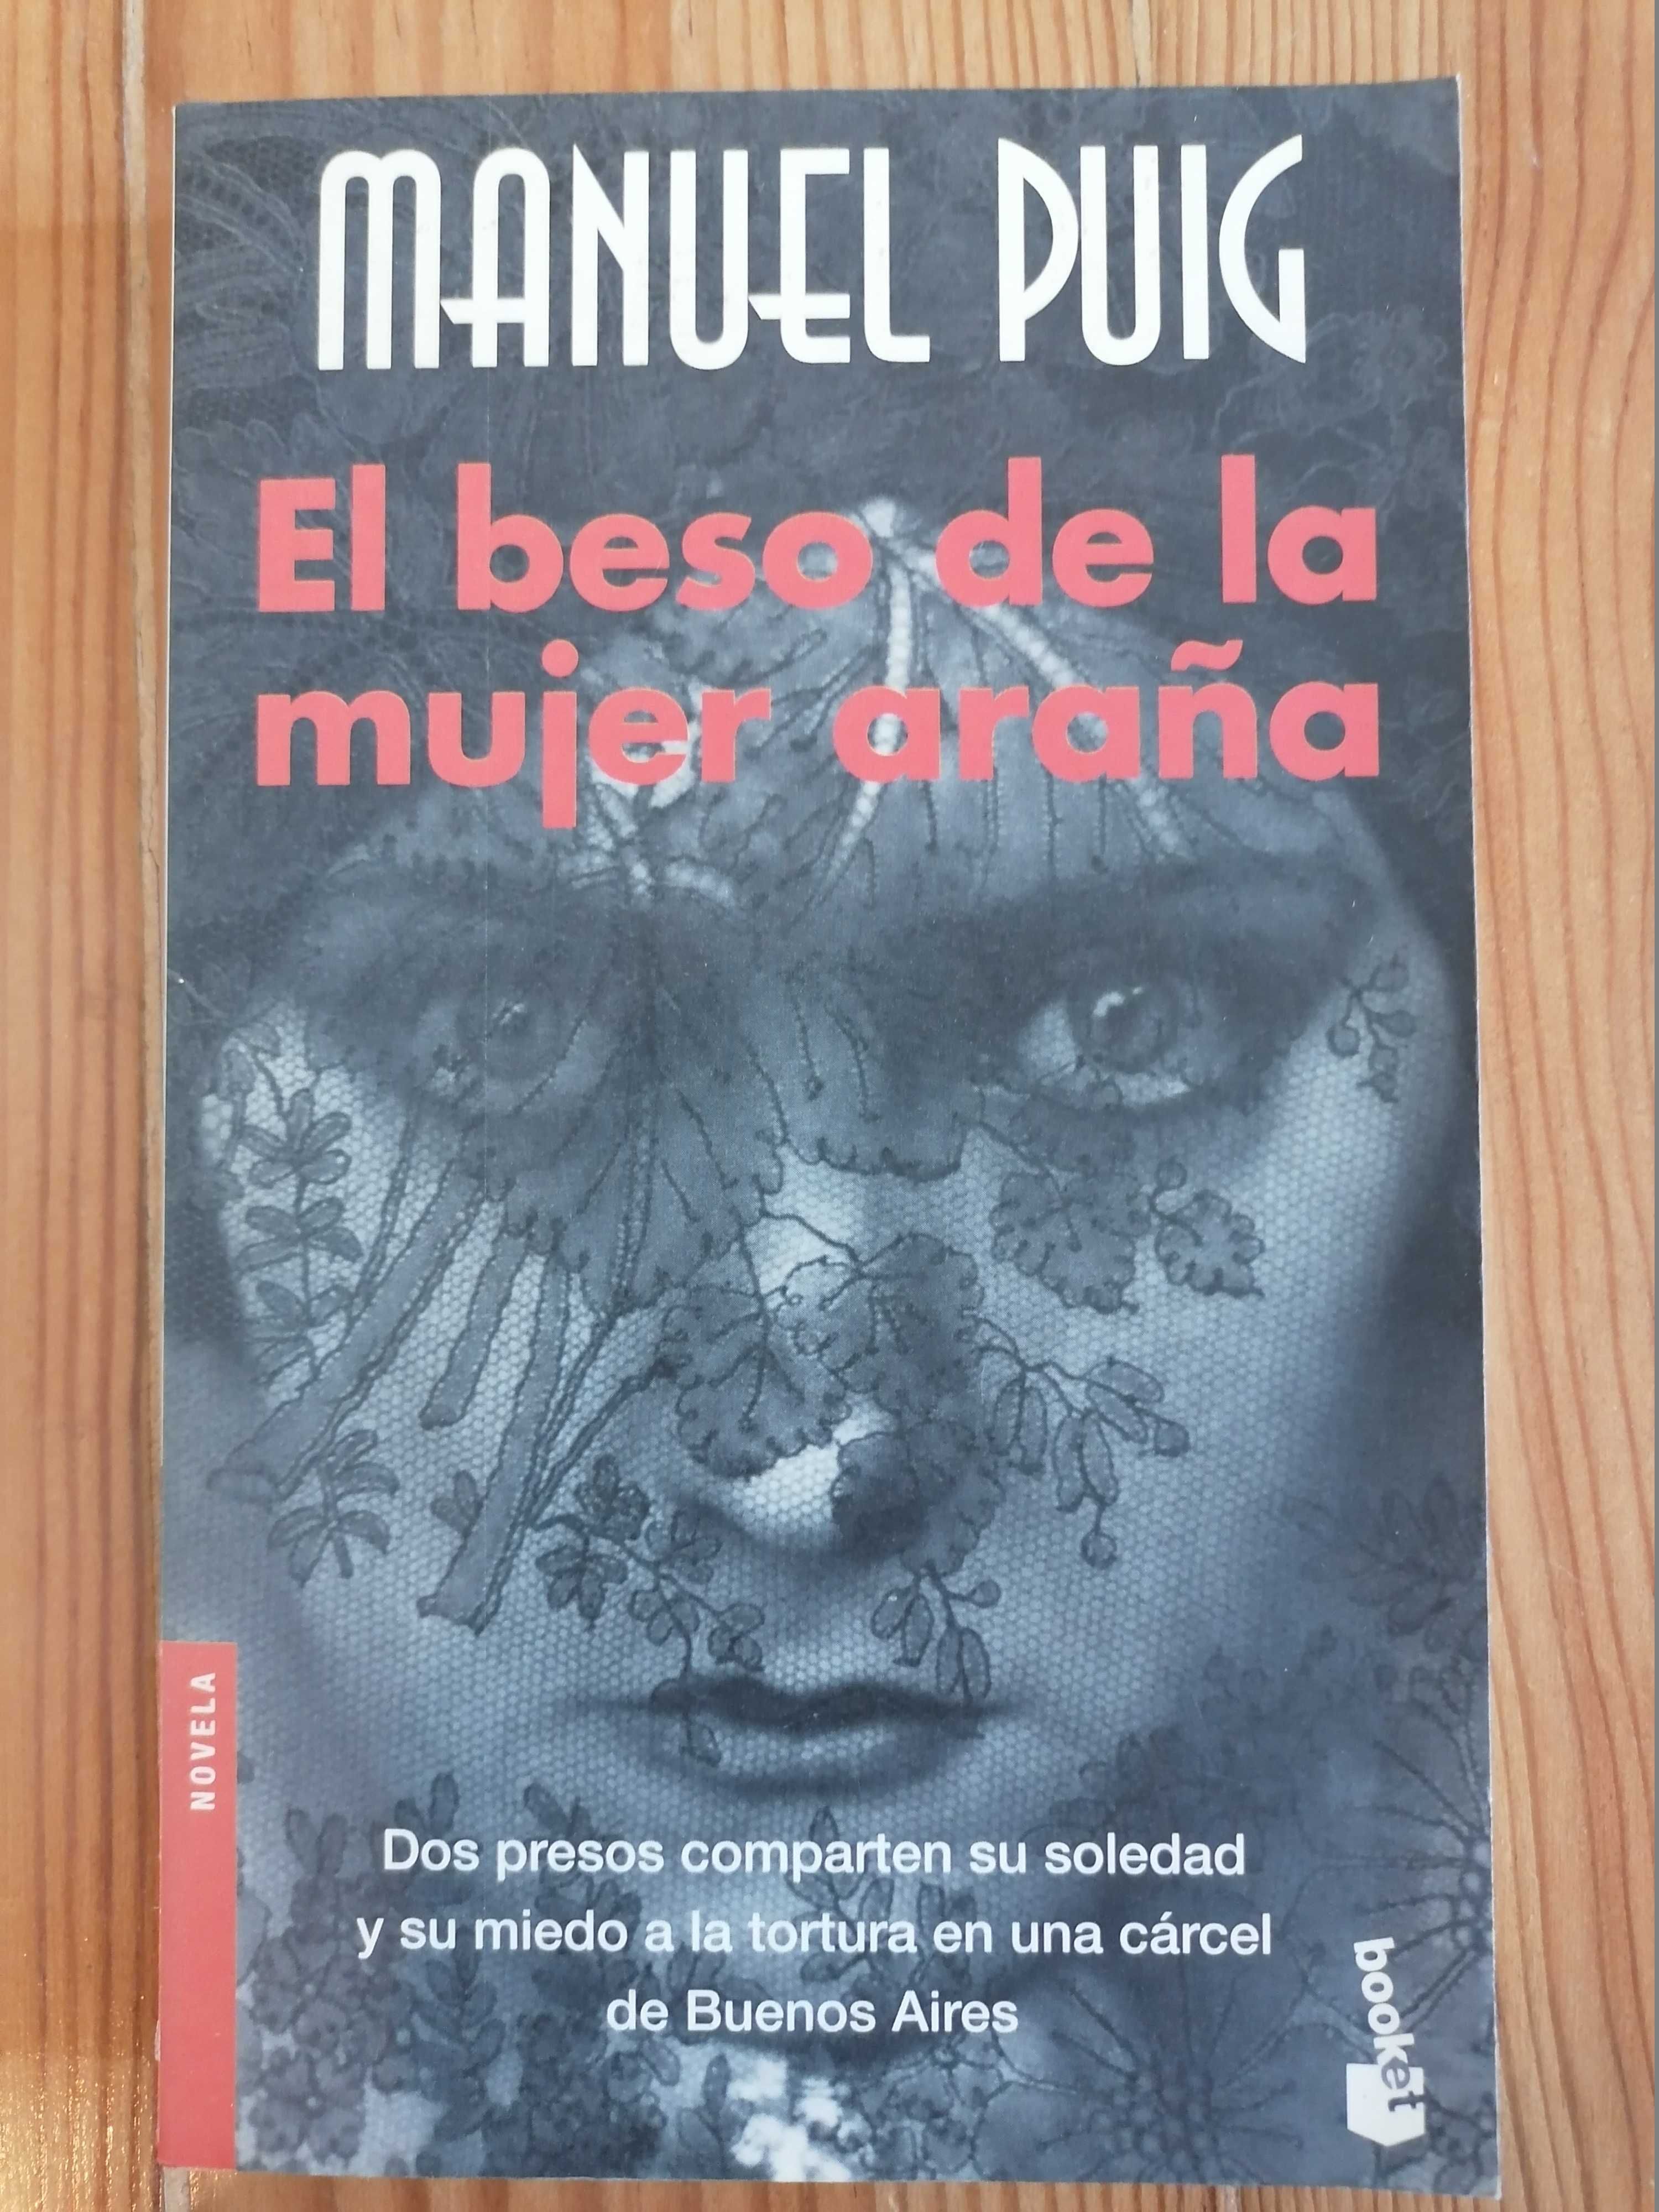 Livros em espanhol / Libros em castellano - 3 livros por 18€